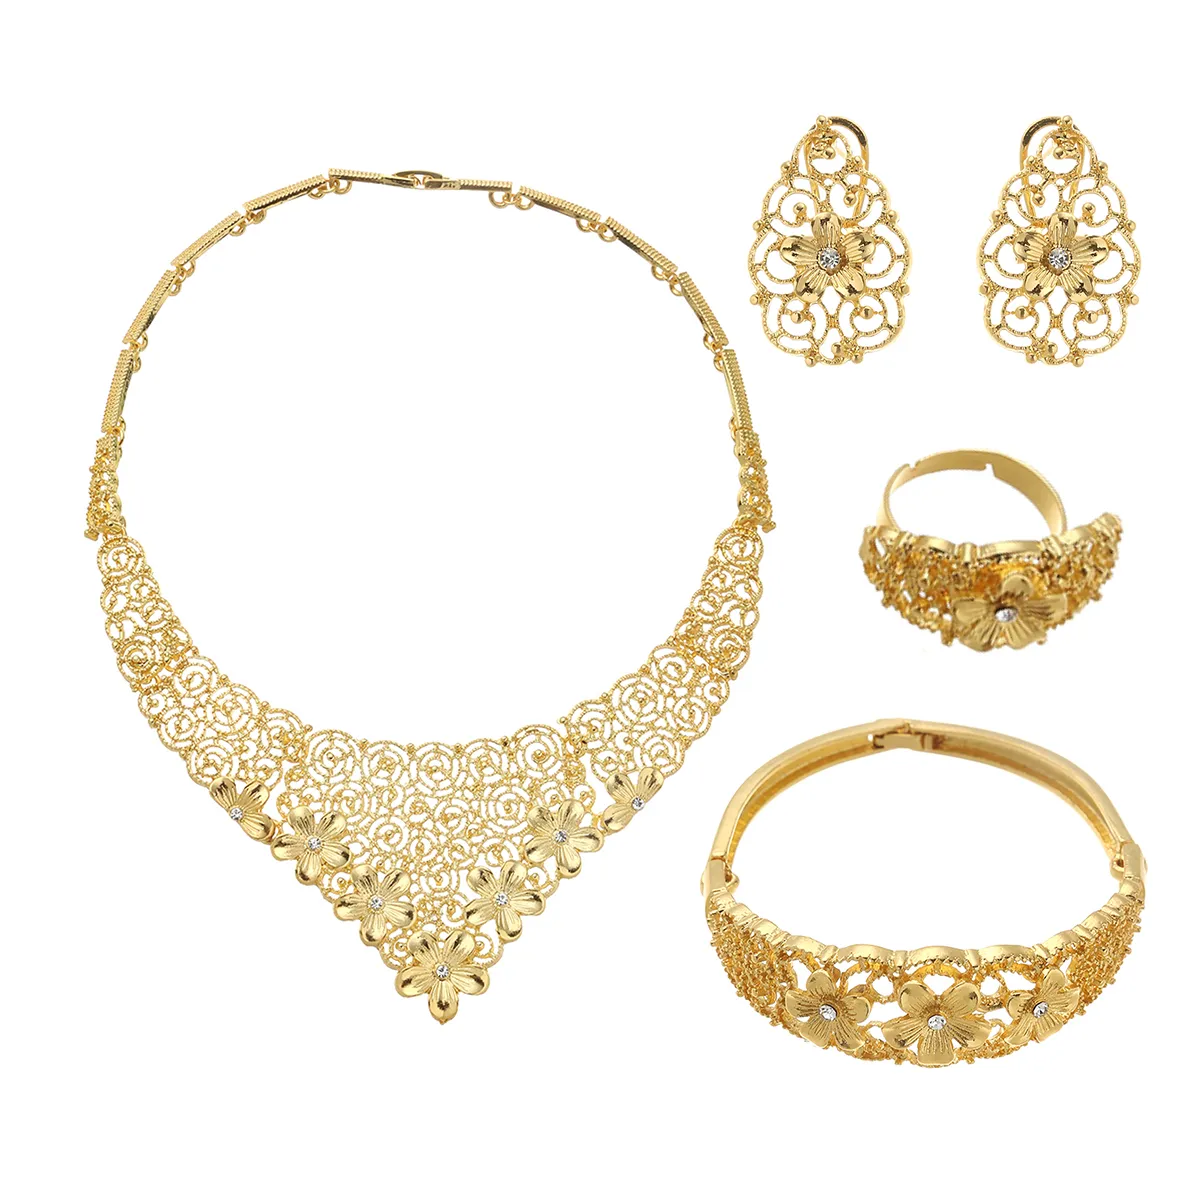 Dubai guld afrikanska brud smycken sätter bröllop gåvor för kvinnor saudiarabiska halsband armband örhängen ring smycken set